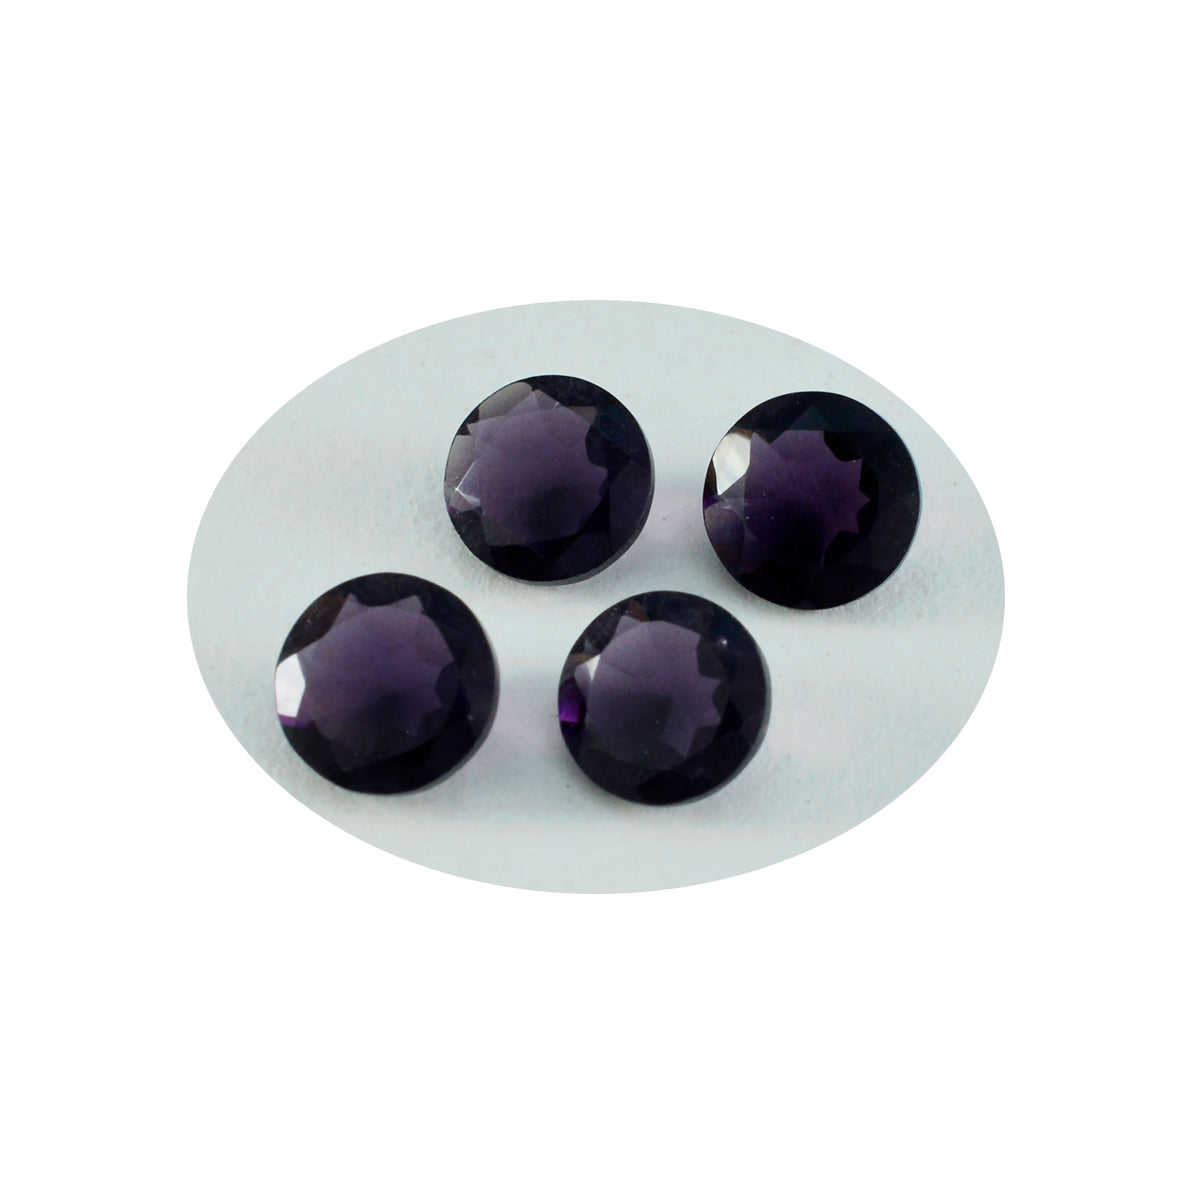 Riyogems 1 Stück violetter Amethyst mit CZ, facettiert, 14 x 14 mm, runde Form, hübscher, hochwertiger, loser Edelstein